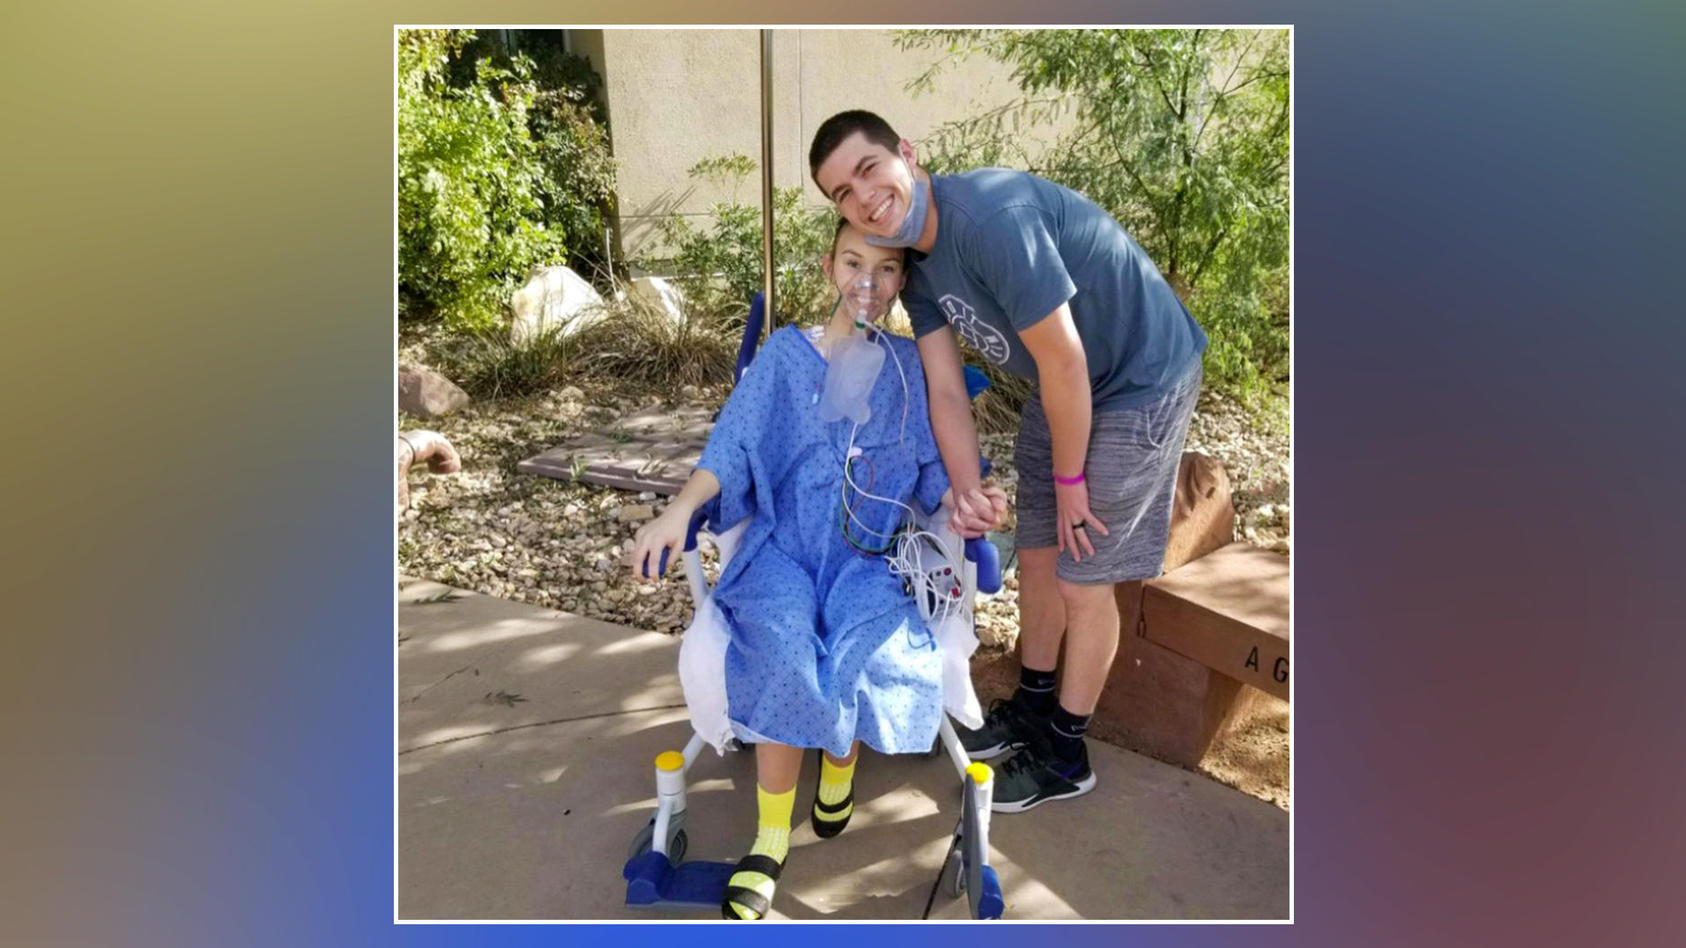 Alexis Gould und Ricky Stafford während Alexis' Krebstherapie 2015. Ricky ist zu der Zeit bereits im Remission, besucht Alexis jedoch weiterhin, um sie zu unterstützen.